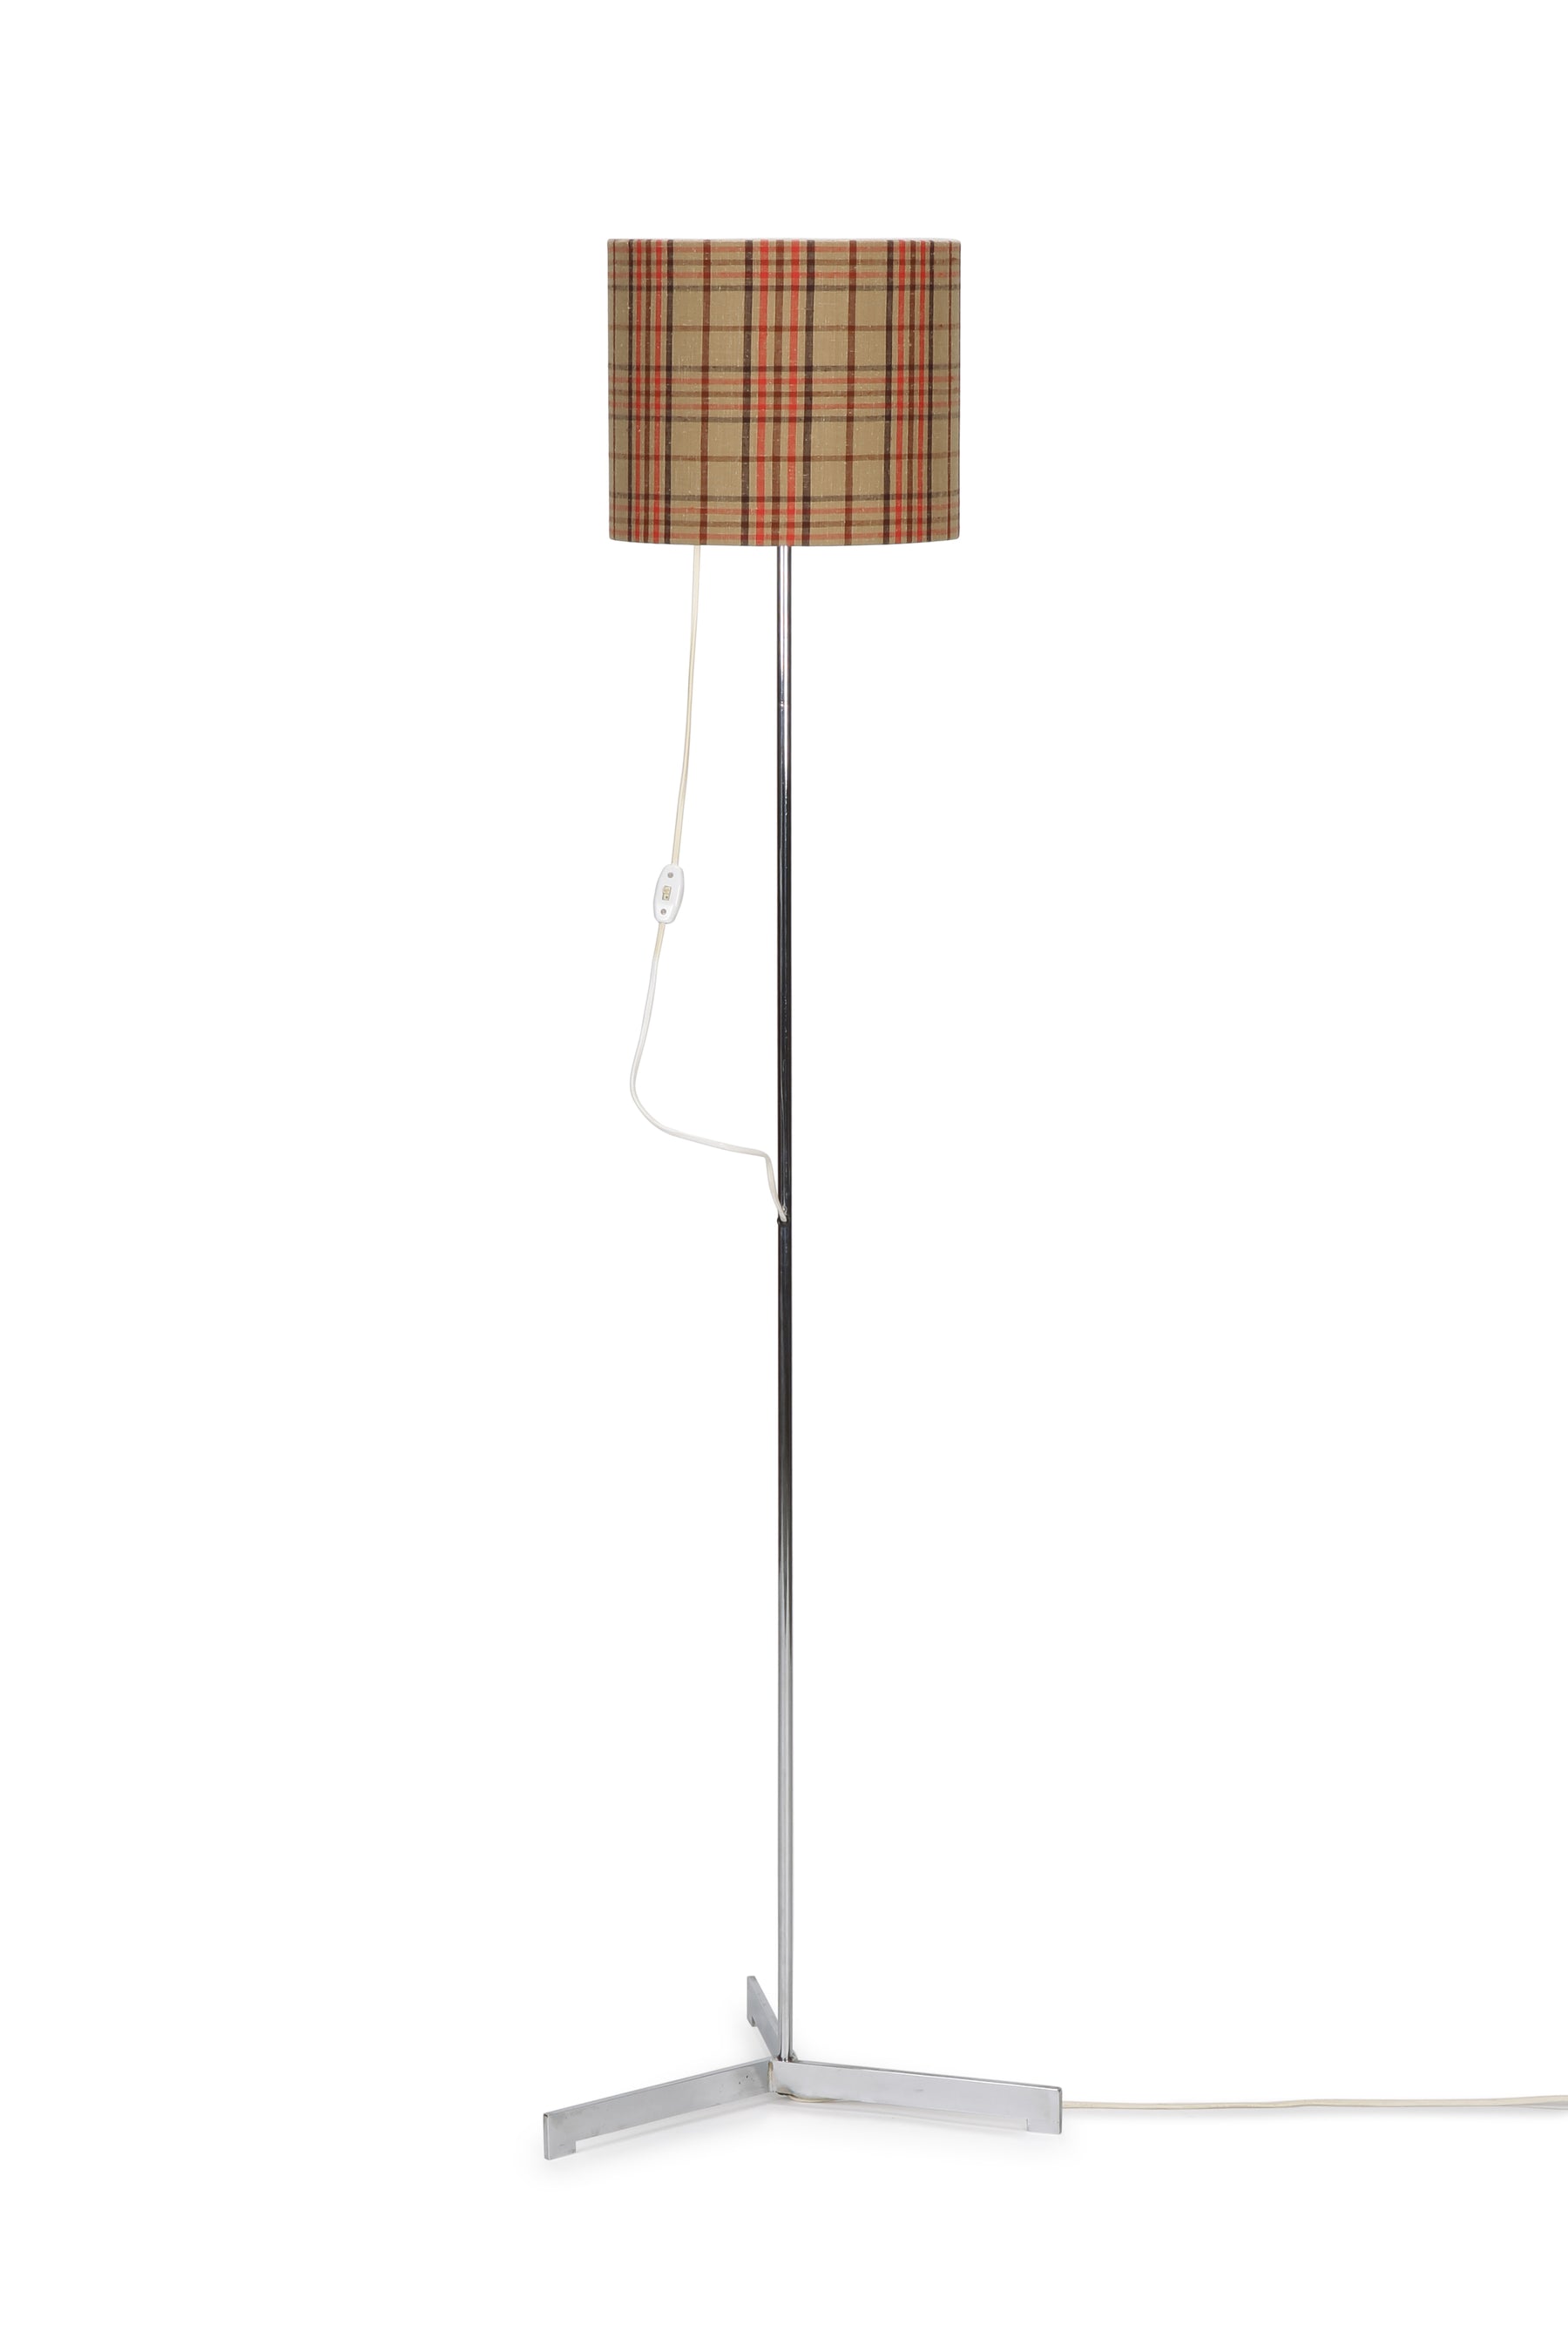 Höhenverstellbare Lampe mit kariertem Schirm, 60er